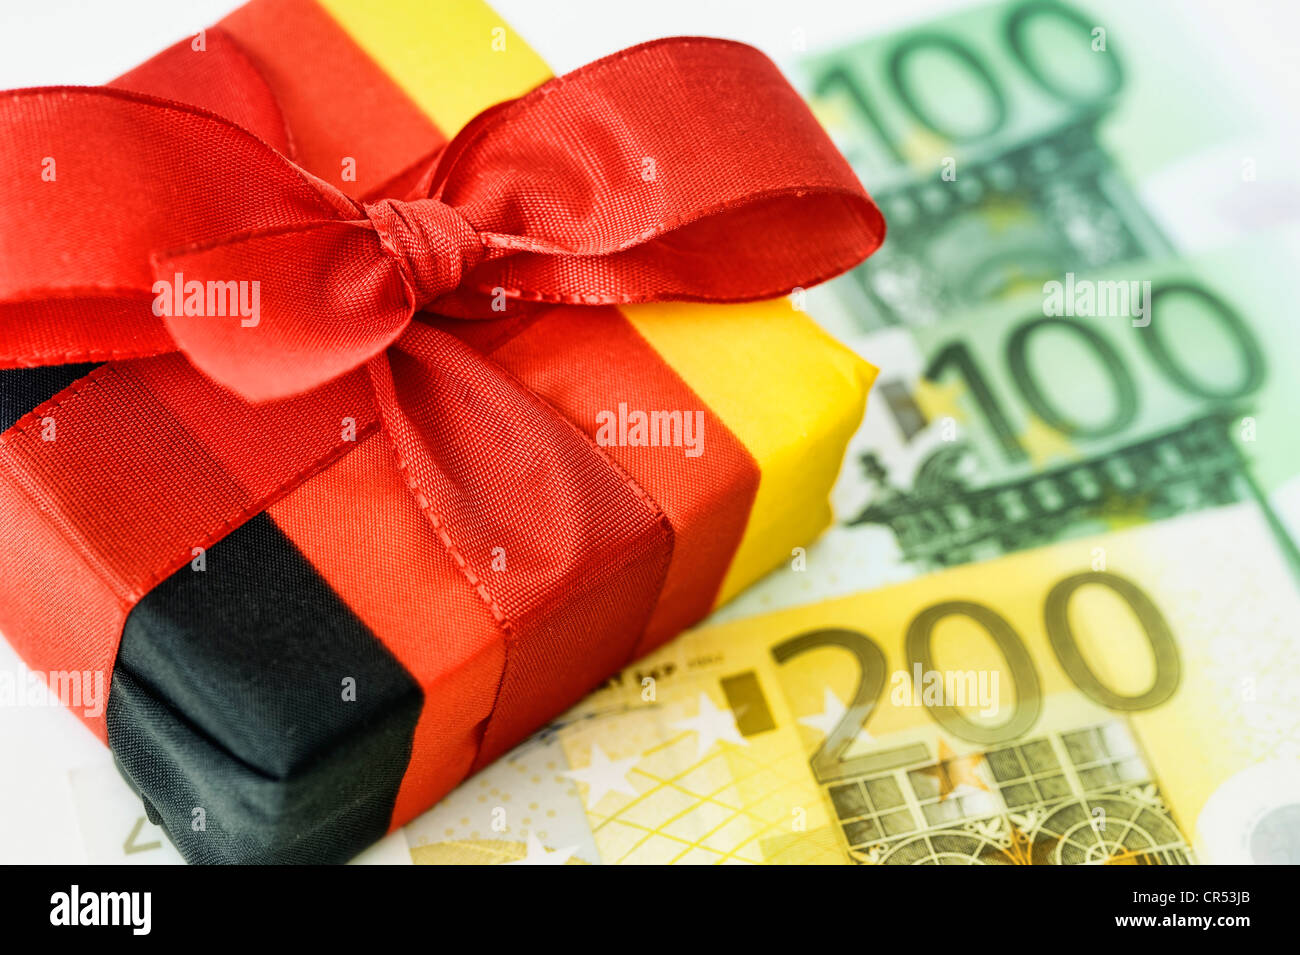 Enveloppé dans le présent les couleurs nationales allemande, les billets en euros, image symbolique pour les réductions d'impôt, cadeau fiscal Banque D'Images